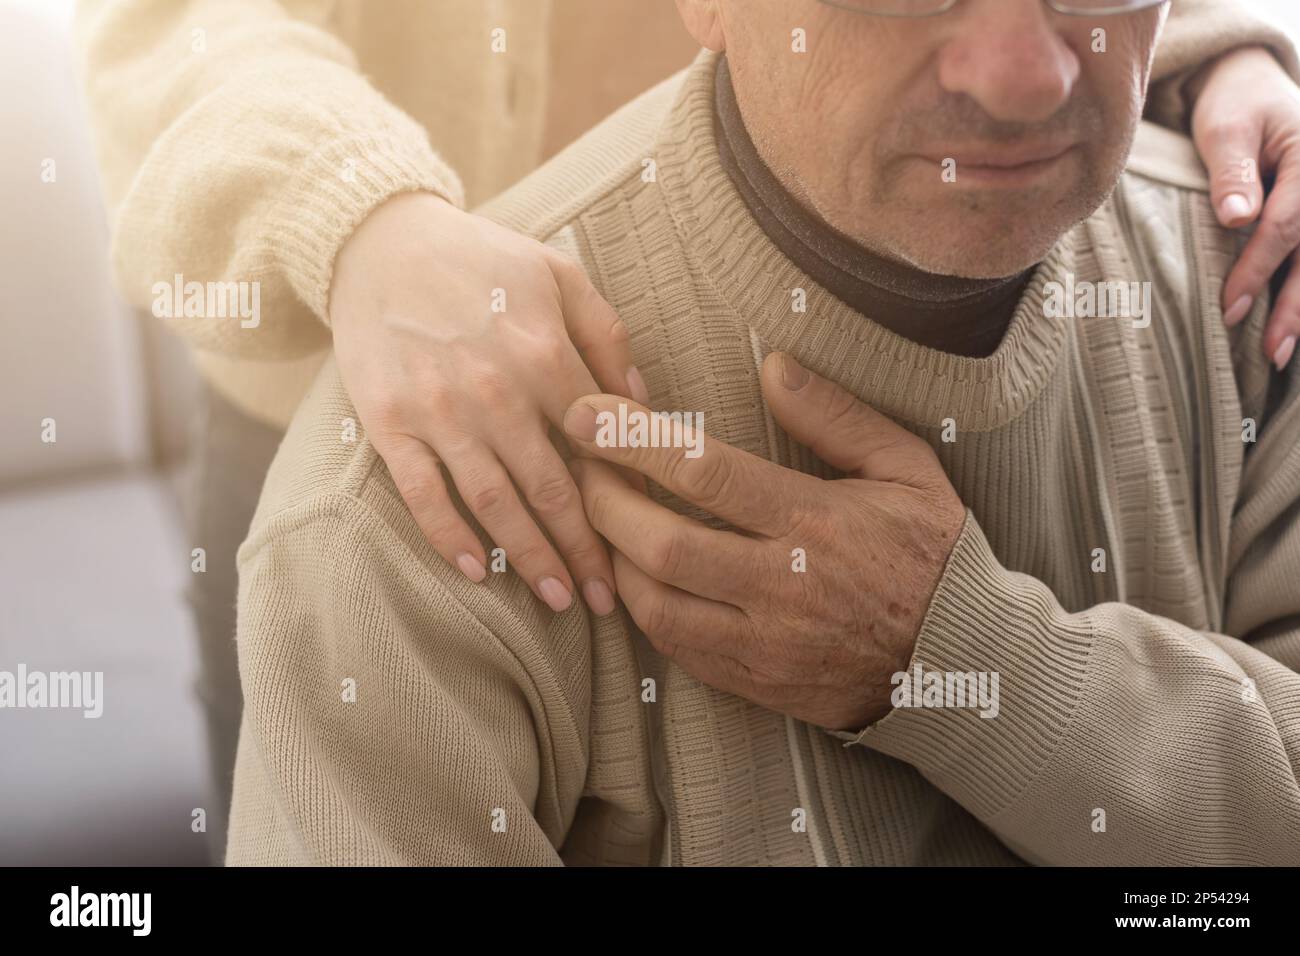 Young woman holding senior man hands, closeup Stock Photo